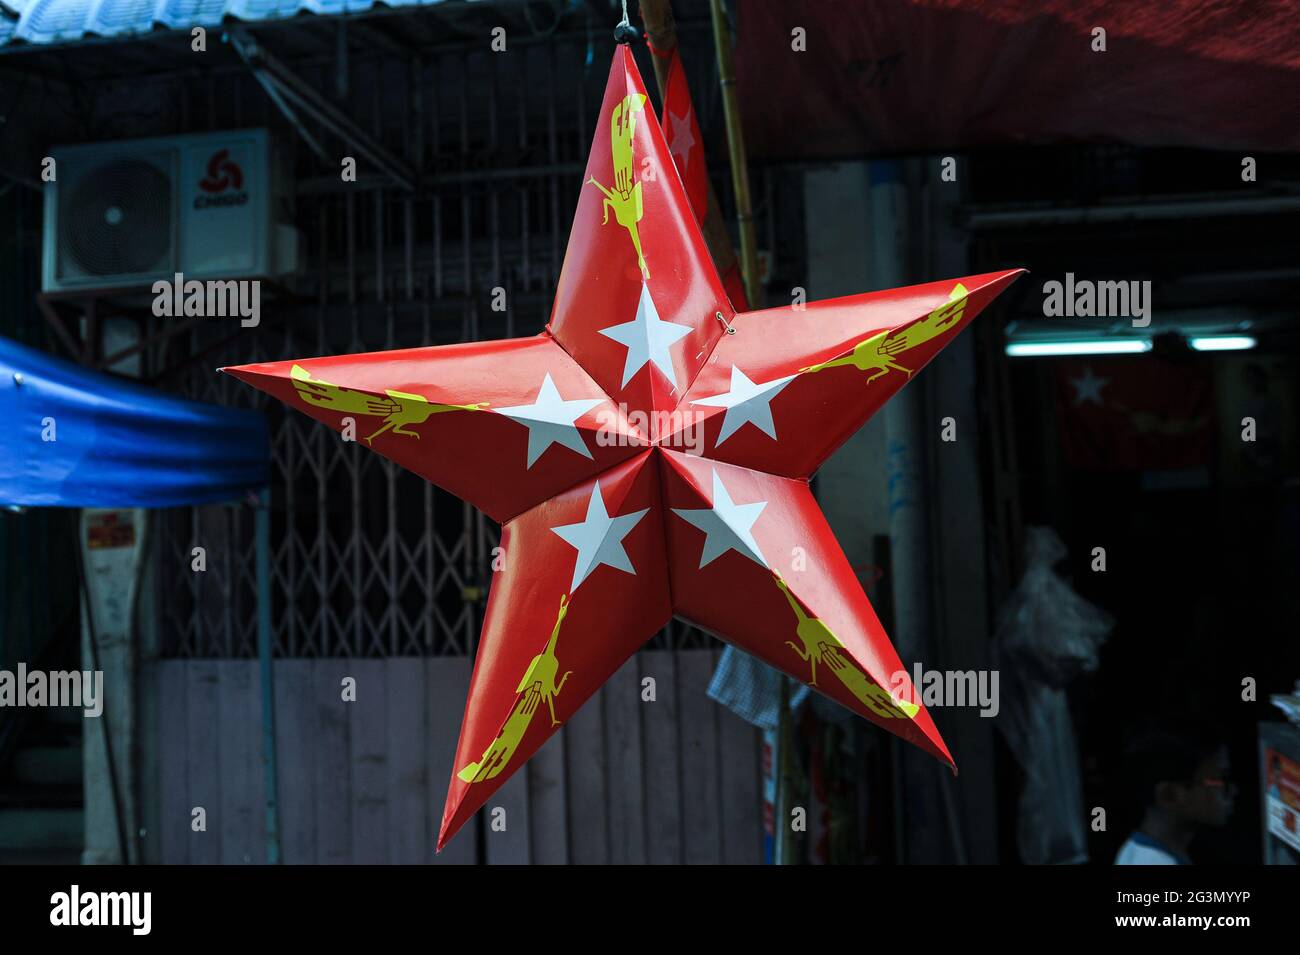 '31.10.2015, Yangon, , Myanmar - UNA stella rossa di cartone con il logo del partito NLD (Lega Nazionale per la democrazia) è appesa da un stallo di strada nel Foto Stock